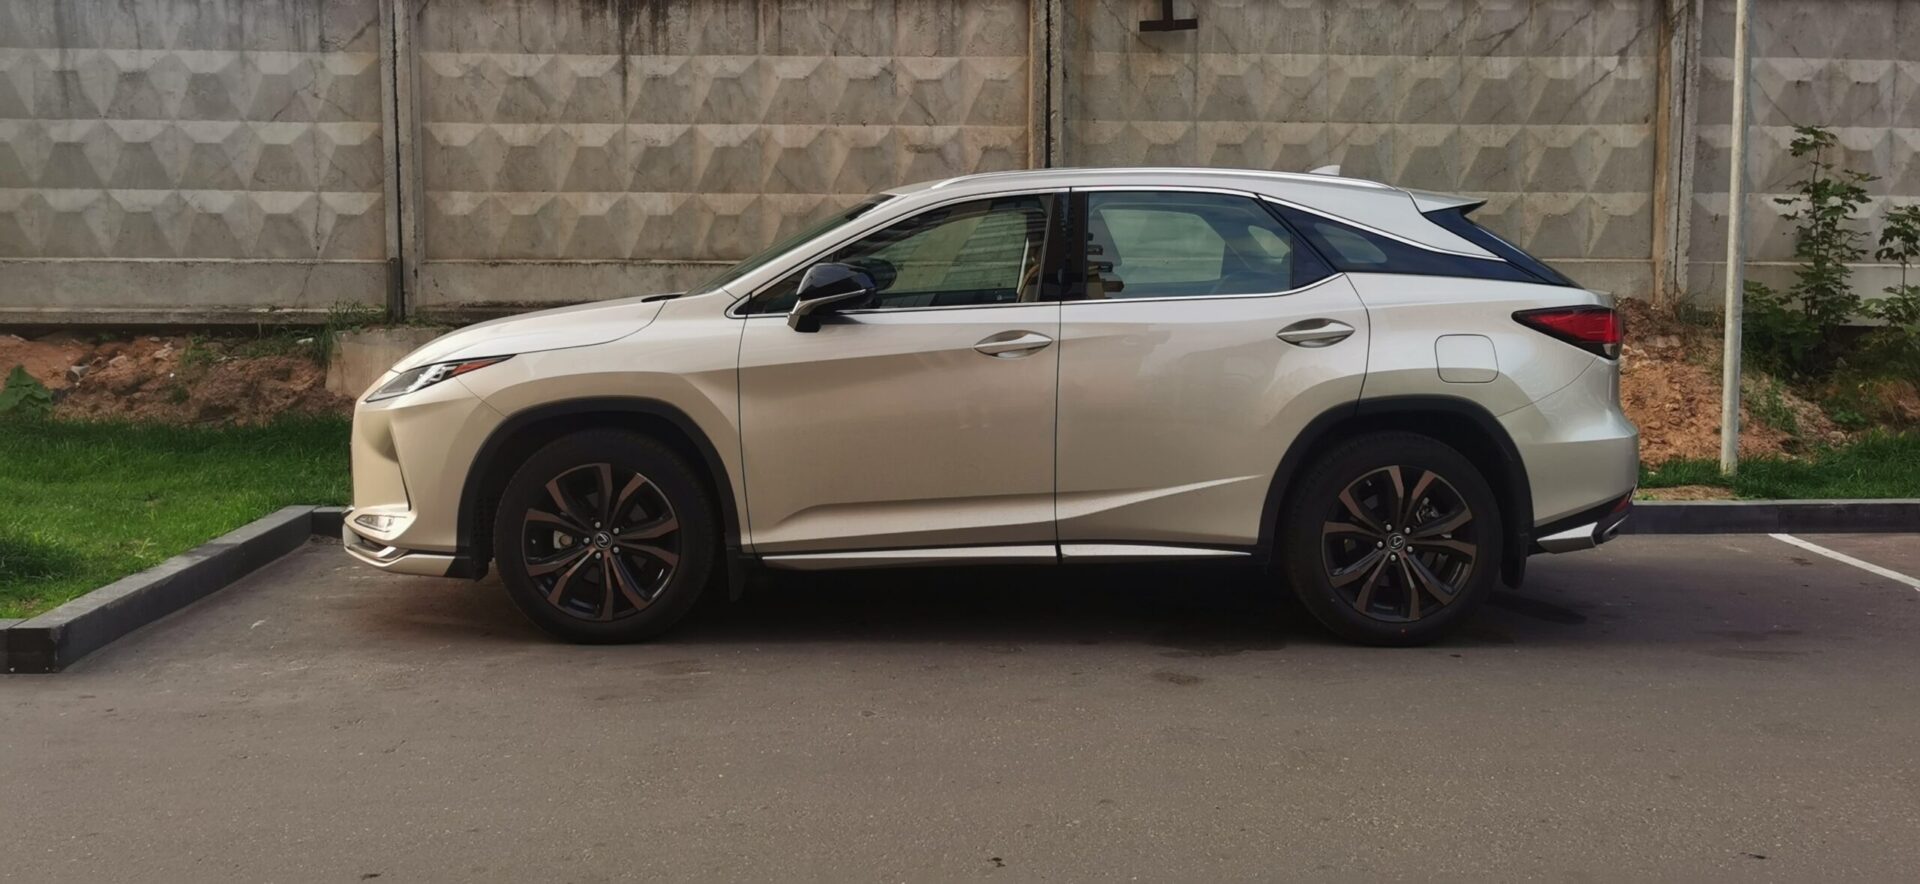 Компания Lexus объявила о выкупе кредитных автомобилей любого бренда в России